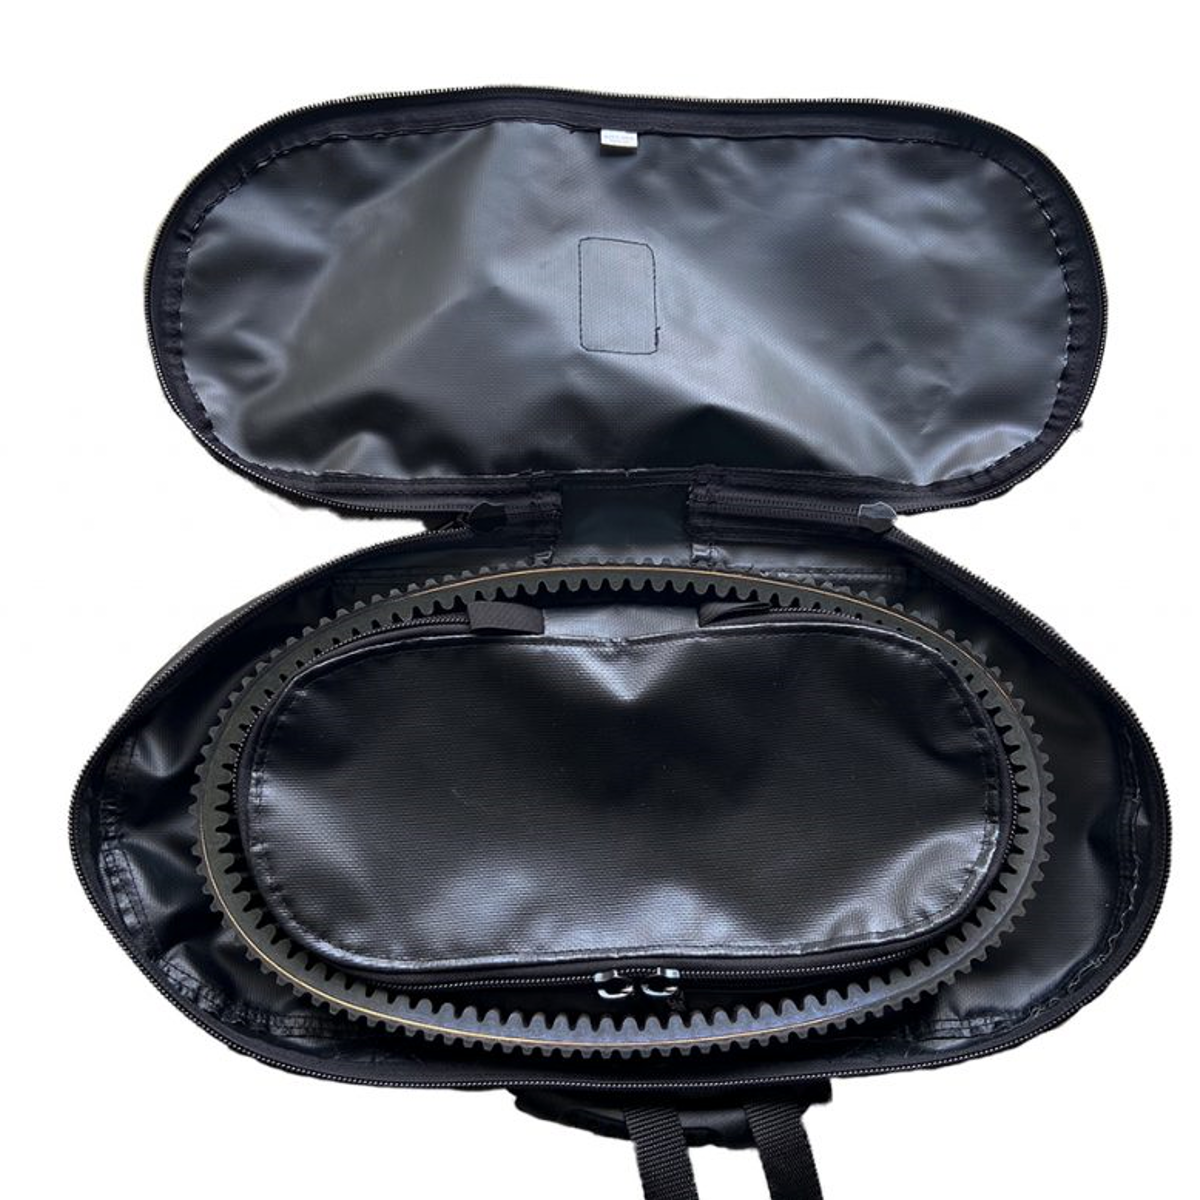 Spare Drive Belt Bag for UTVs – Large